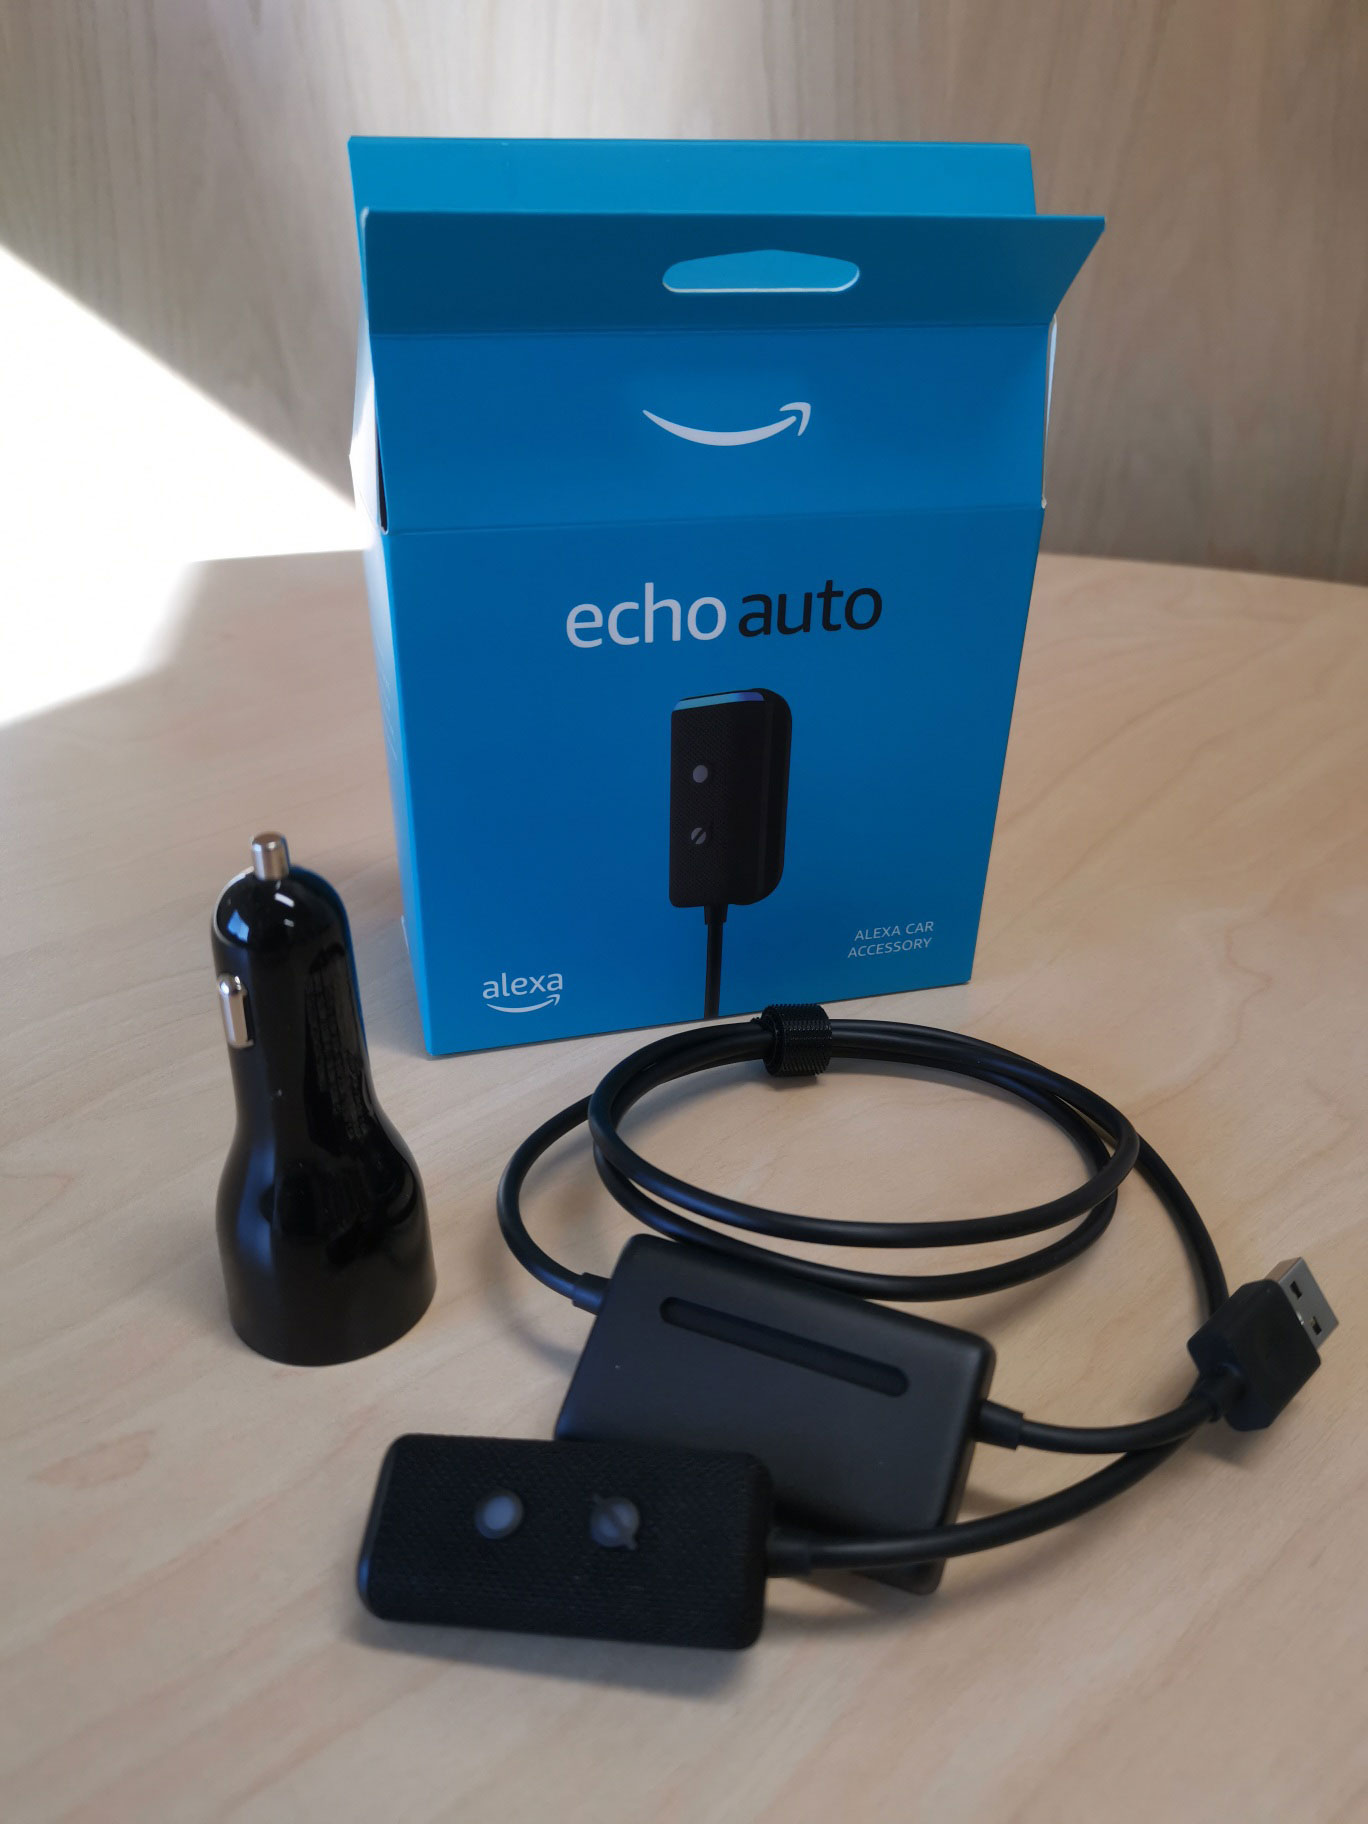 Echo Auto (2nd gen) review: Alexa rides shotgun